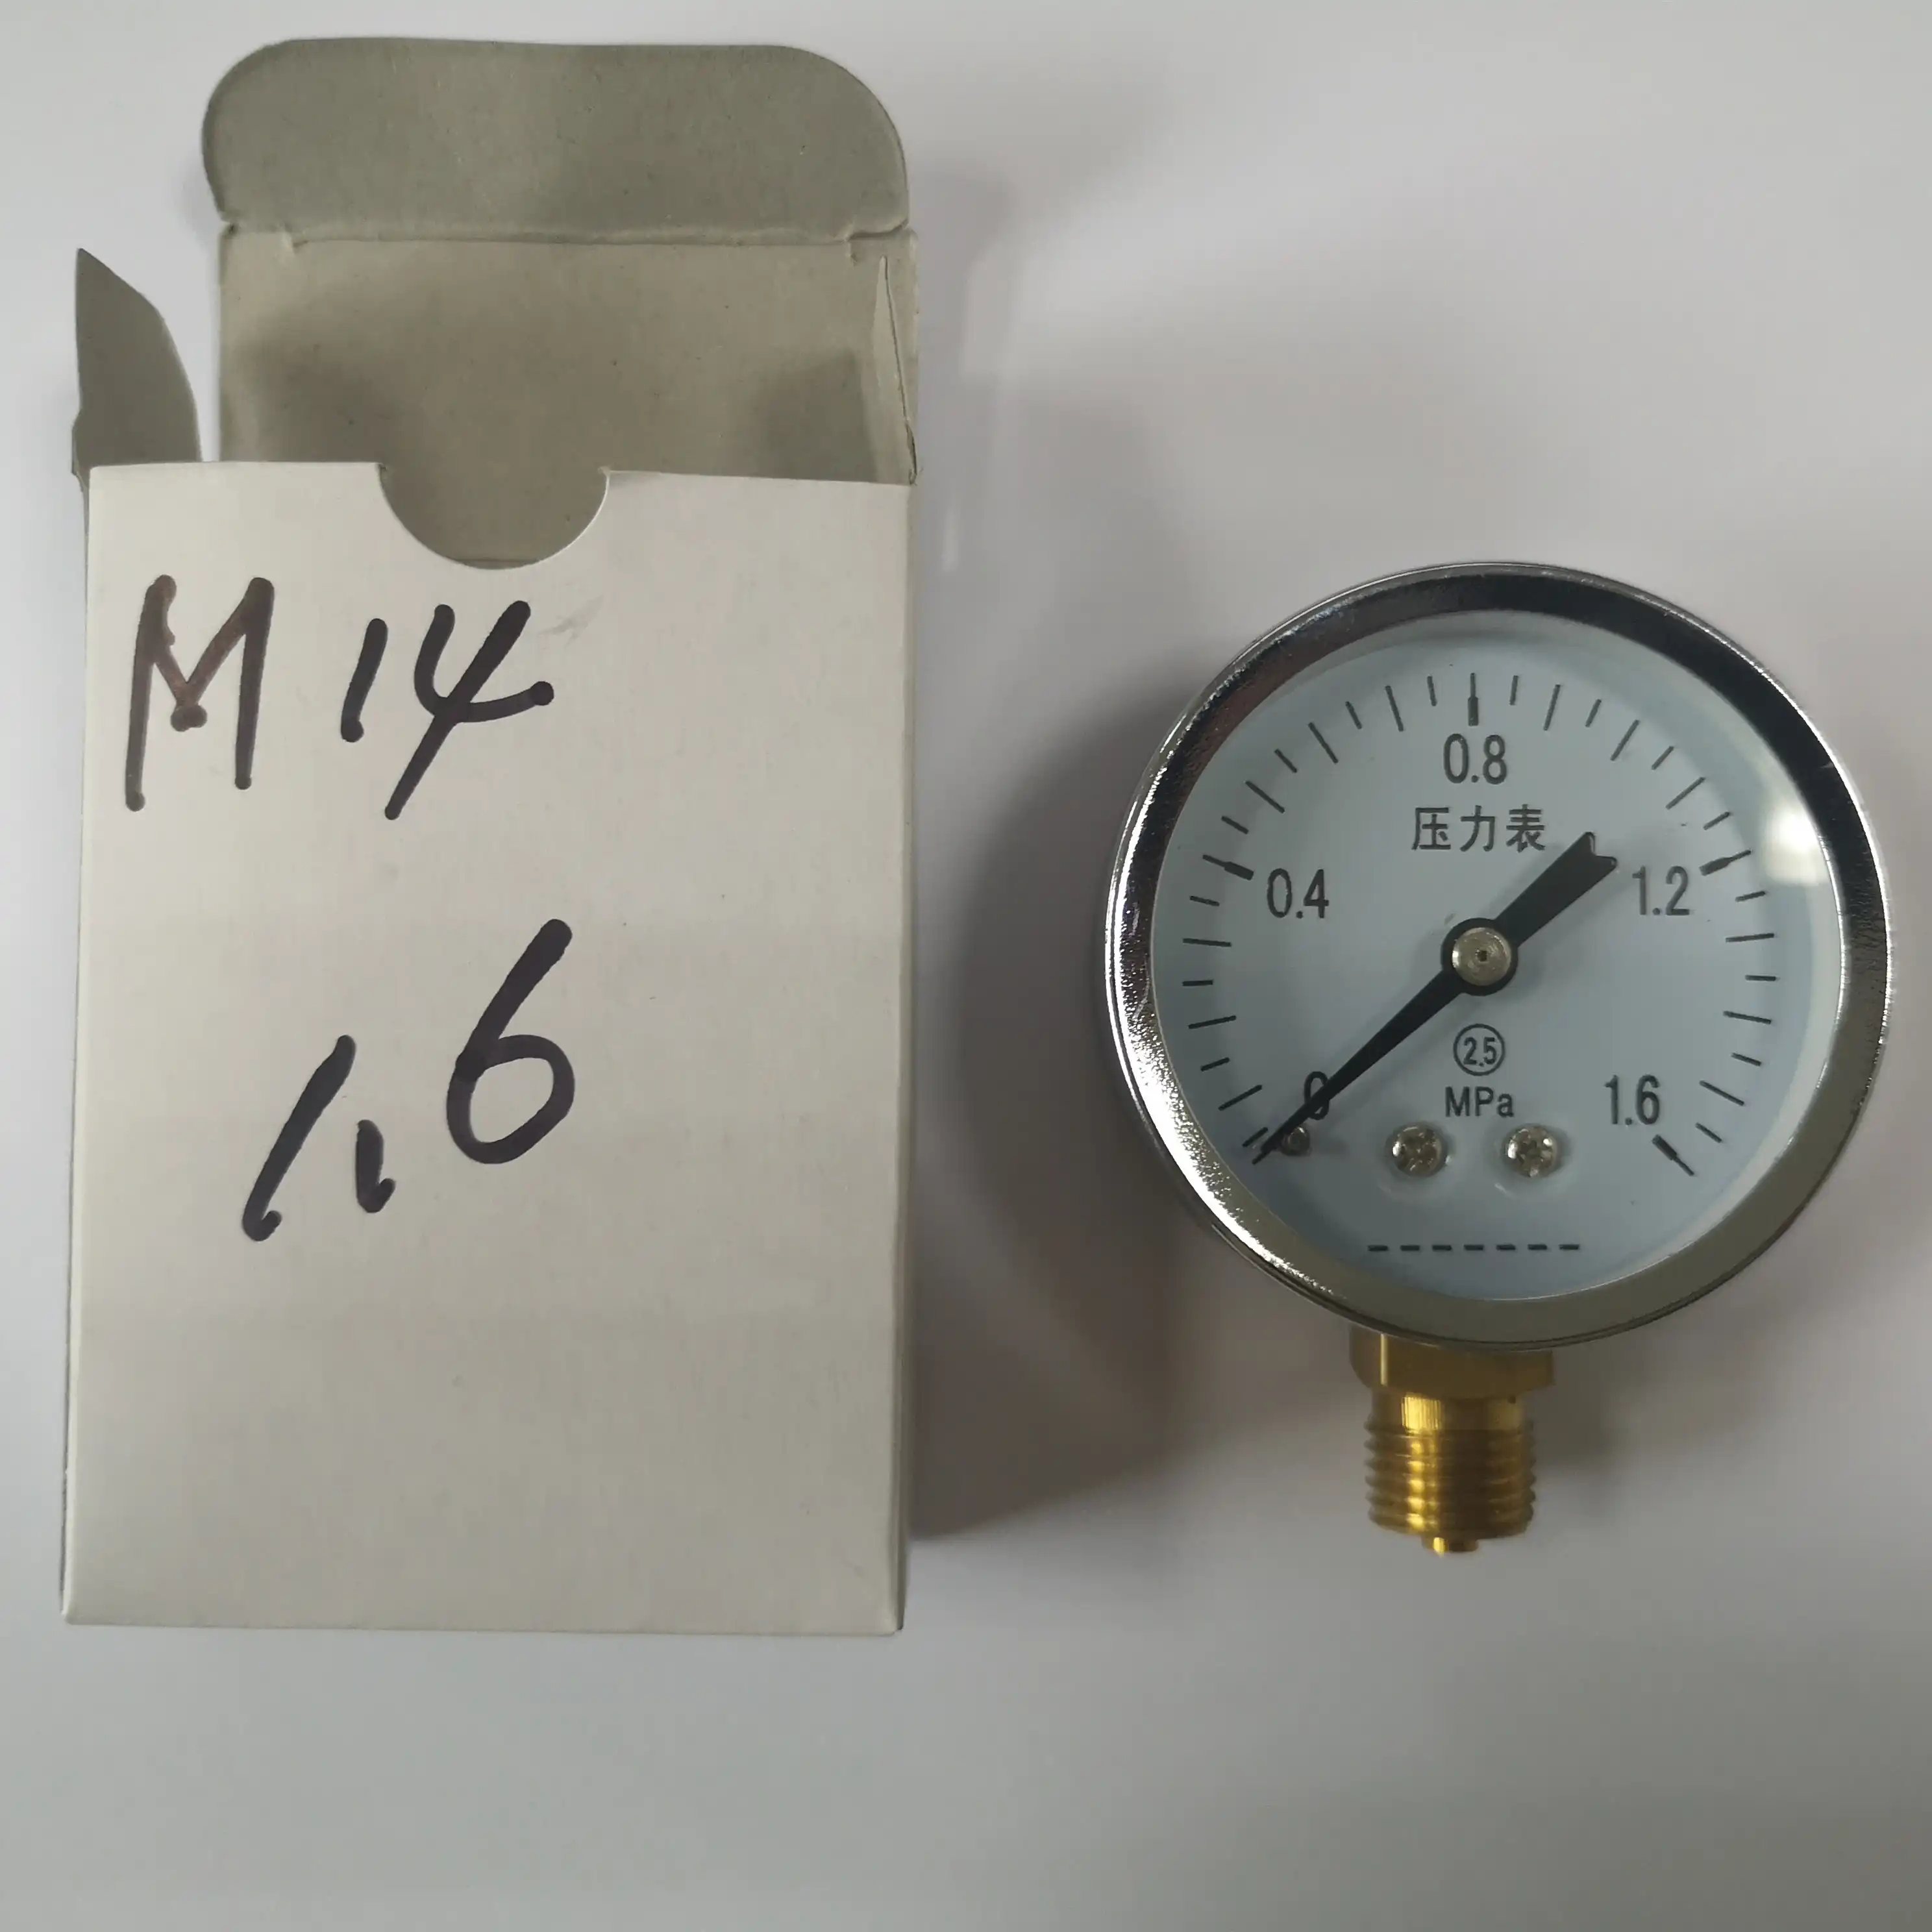 5mpa oil pressure gauge 2.5 pressure gauge